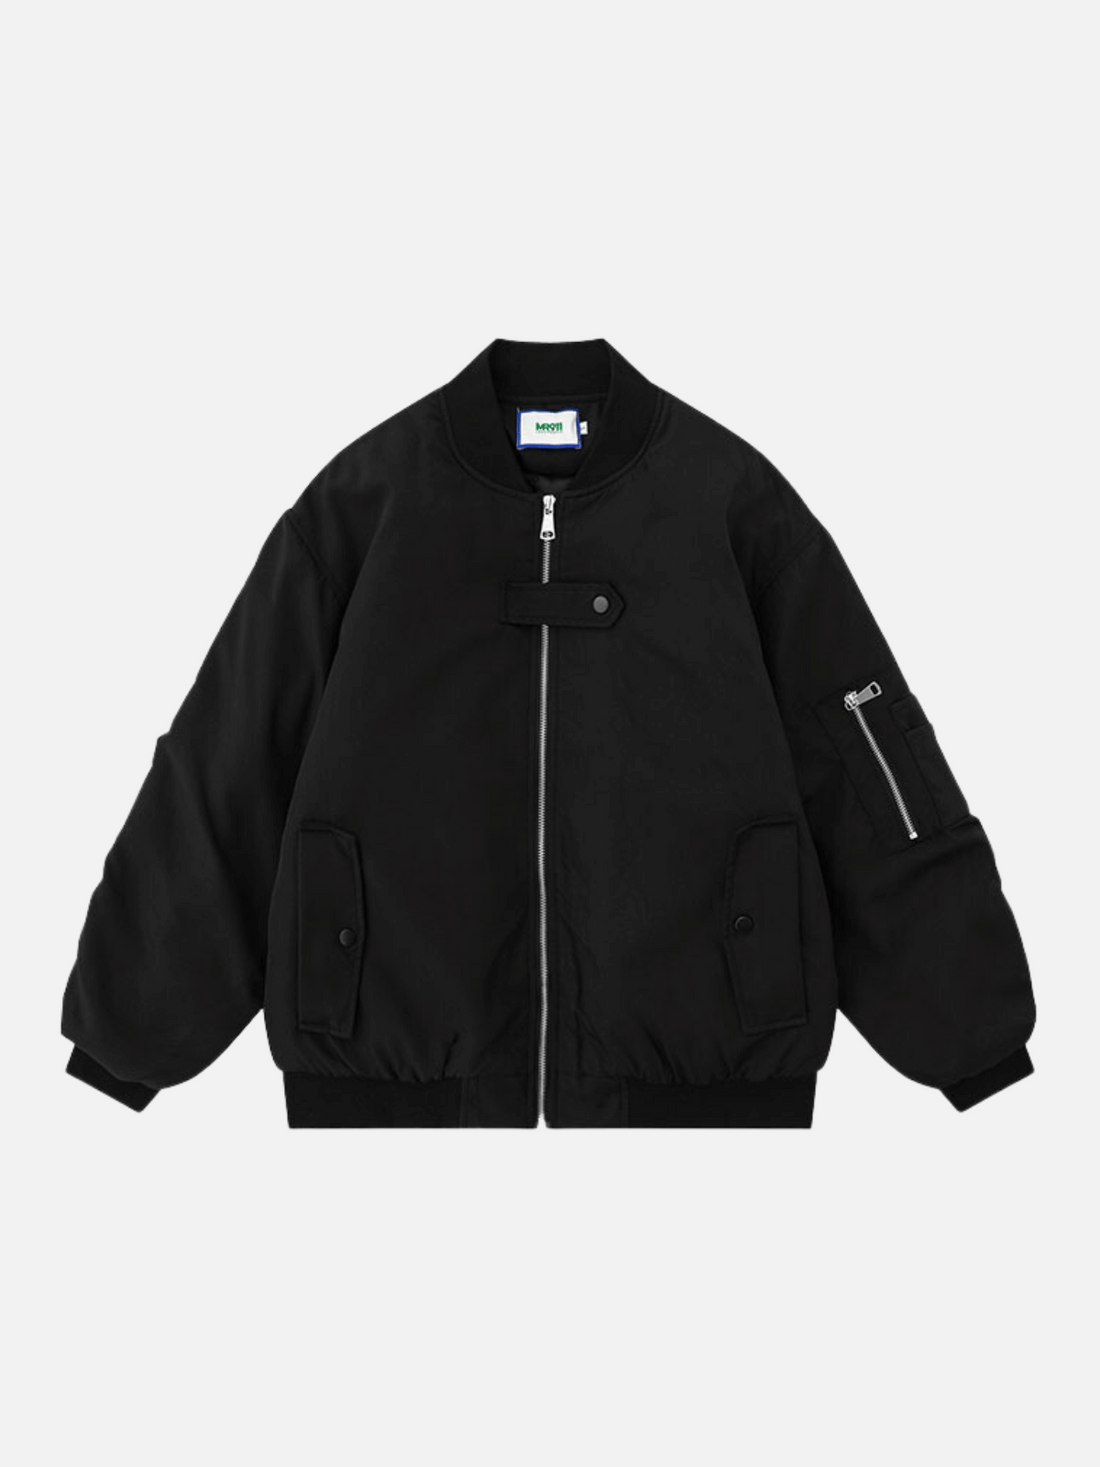 SHADOW - Bomber Jacket Black | Teenwear.eu